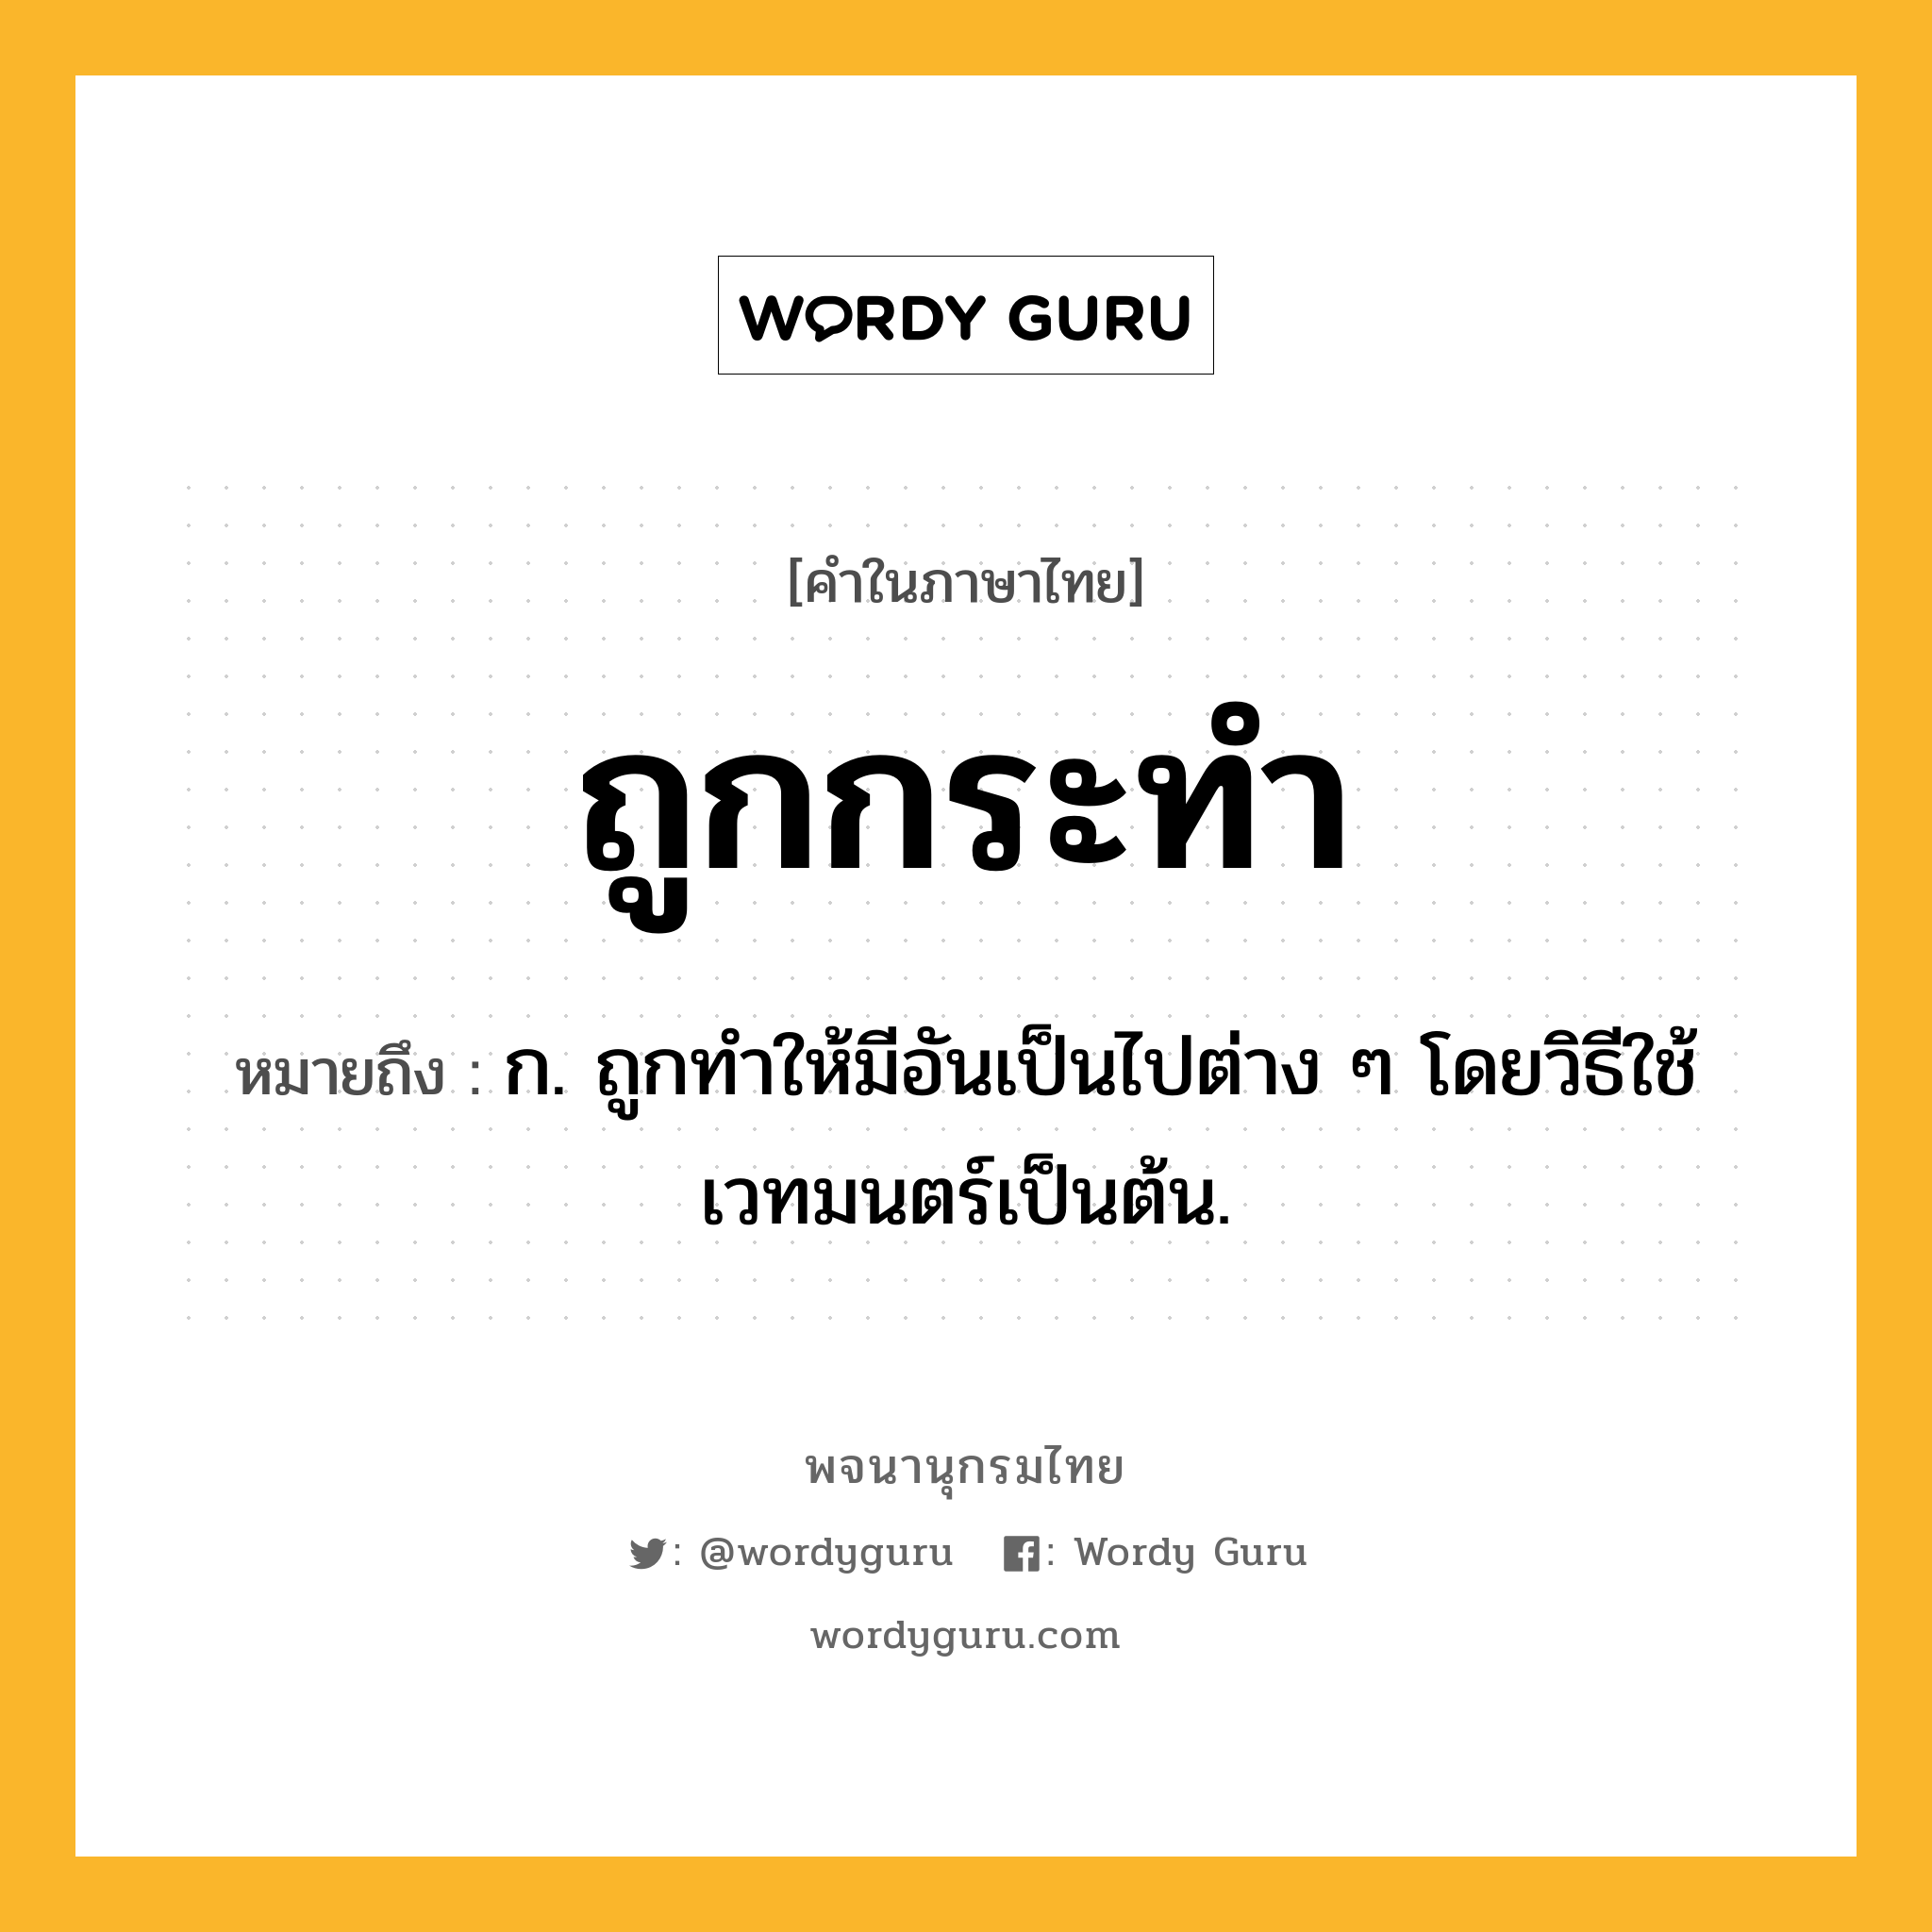 ถูกกระทำ หมายถึงอะไร?, คำในภาษาไทย ถูกกระทำ หมายถึง ก. ถูกทำให้มีอันเป็นไปต่าง ๆ โดยวิธีใช้เวทมนตร์เป็นต้น.